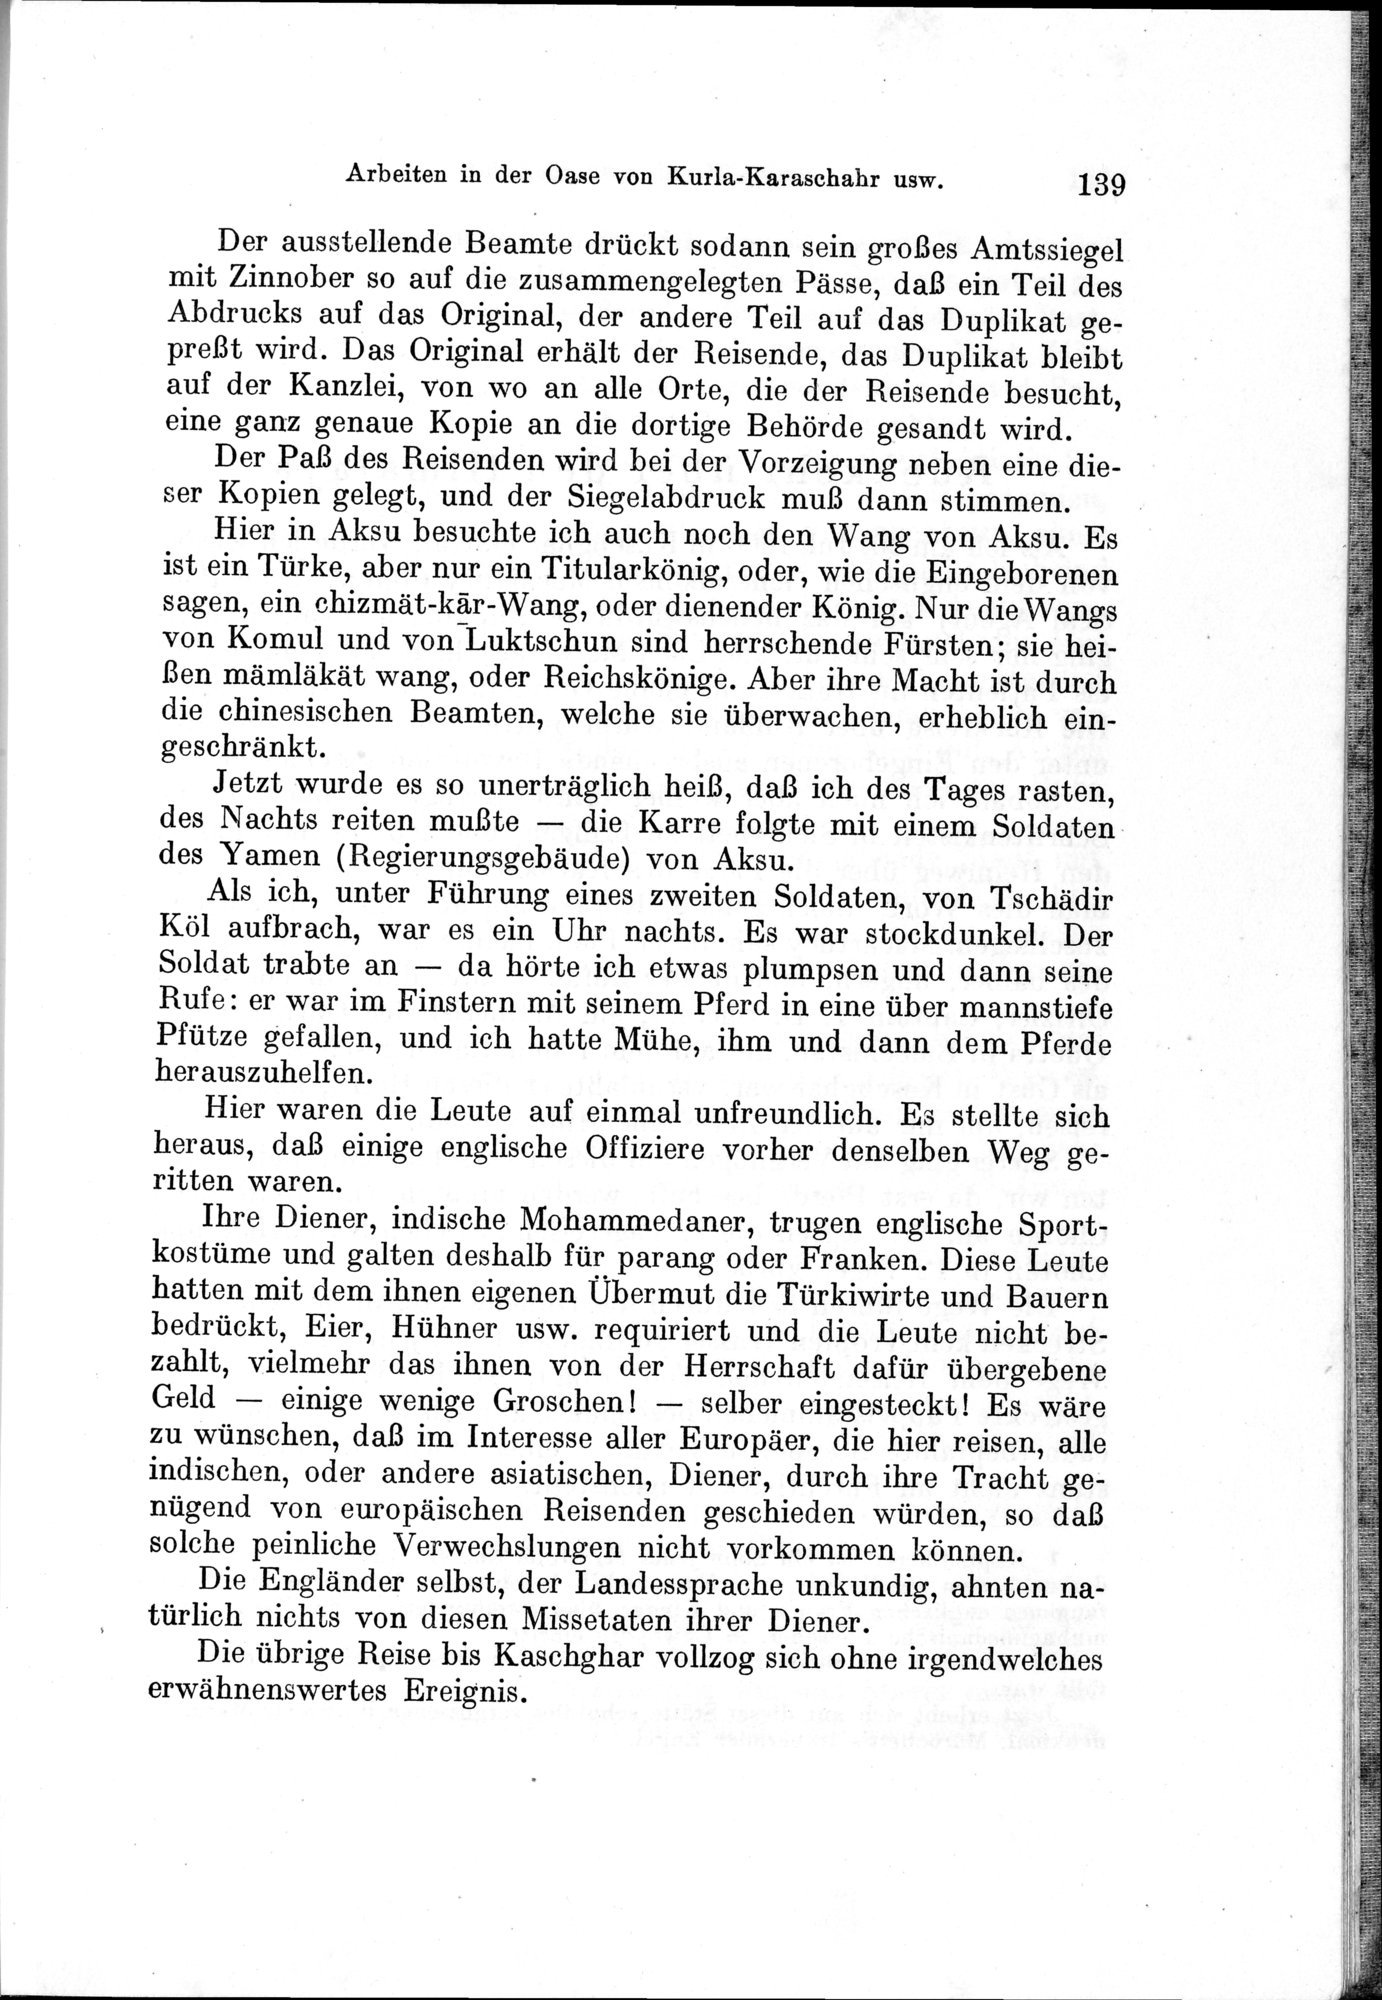 Auf Hellas Spuren in Ostturkistan : vol.1 / Page 201 (Grayscale High Resolution Image)